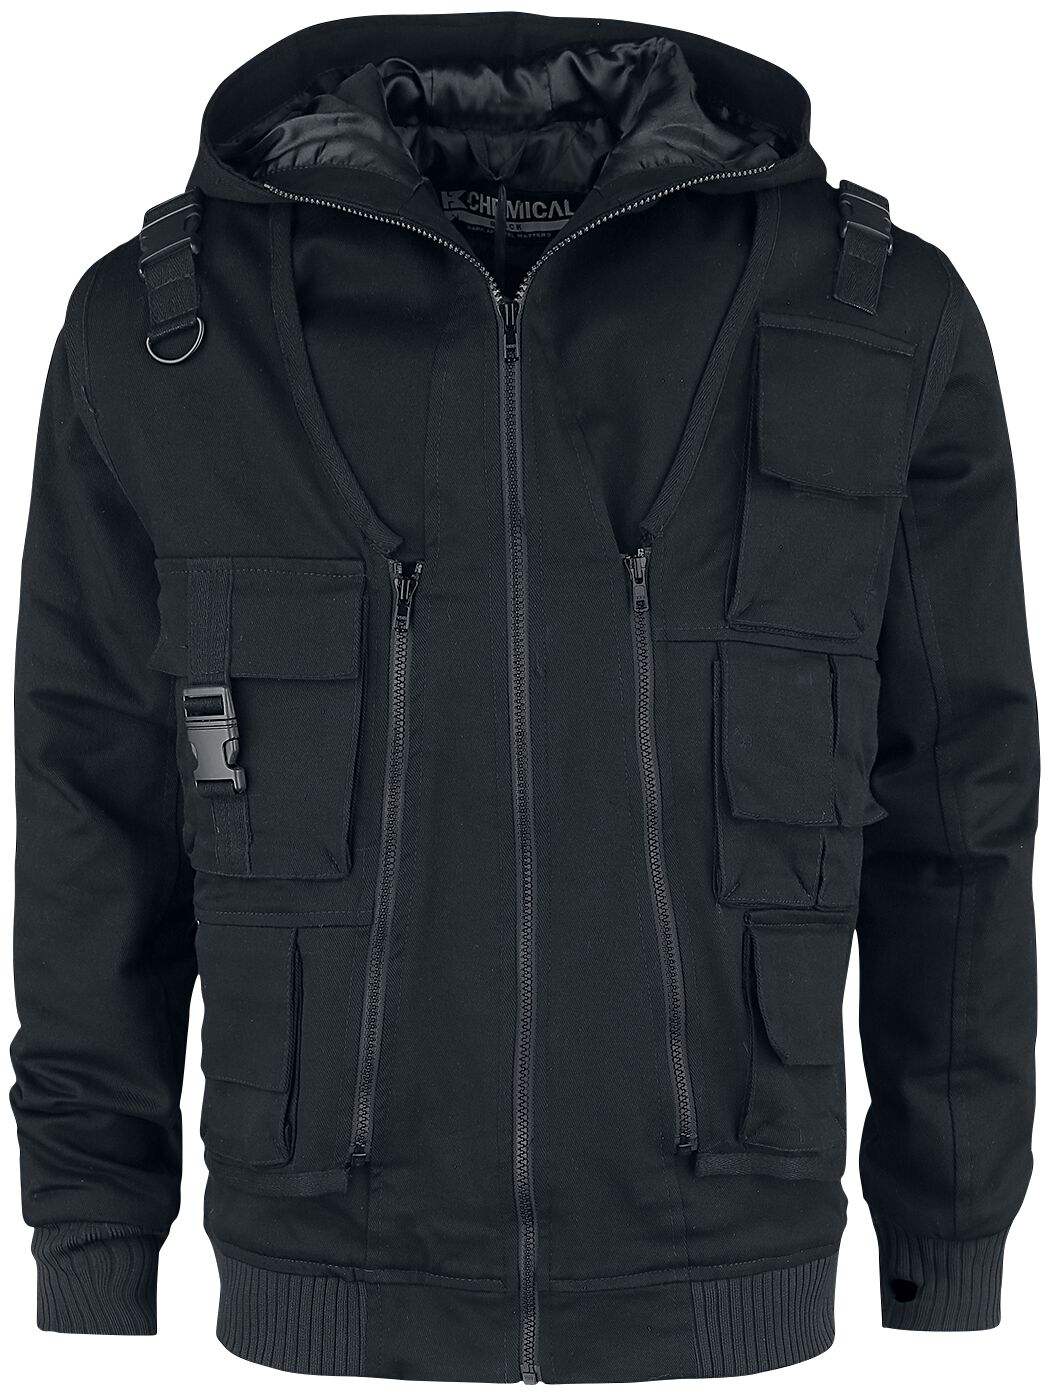 Chemical Black - Gothic Winterjacke - Taj Jacket - S bis XXL - für Männer - Größe XL - schwarz